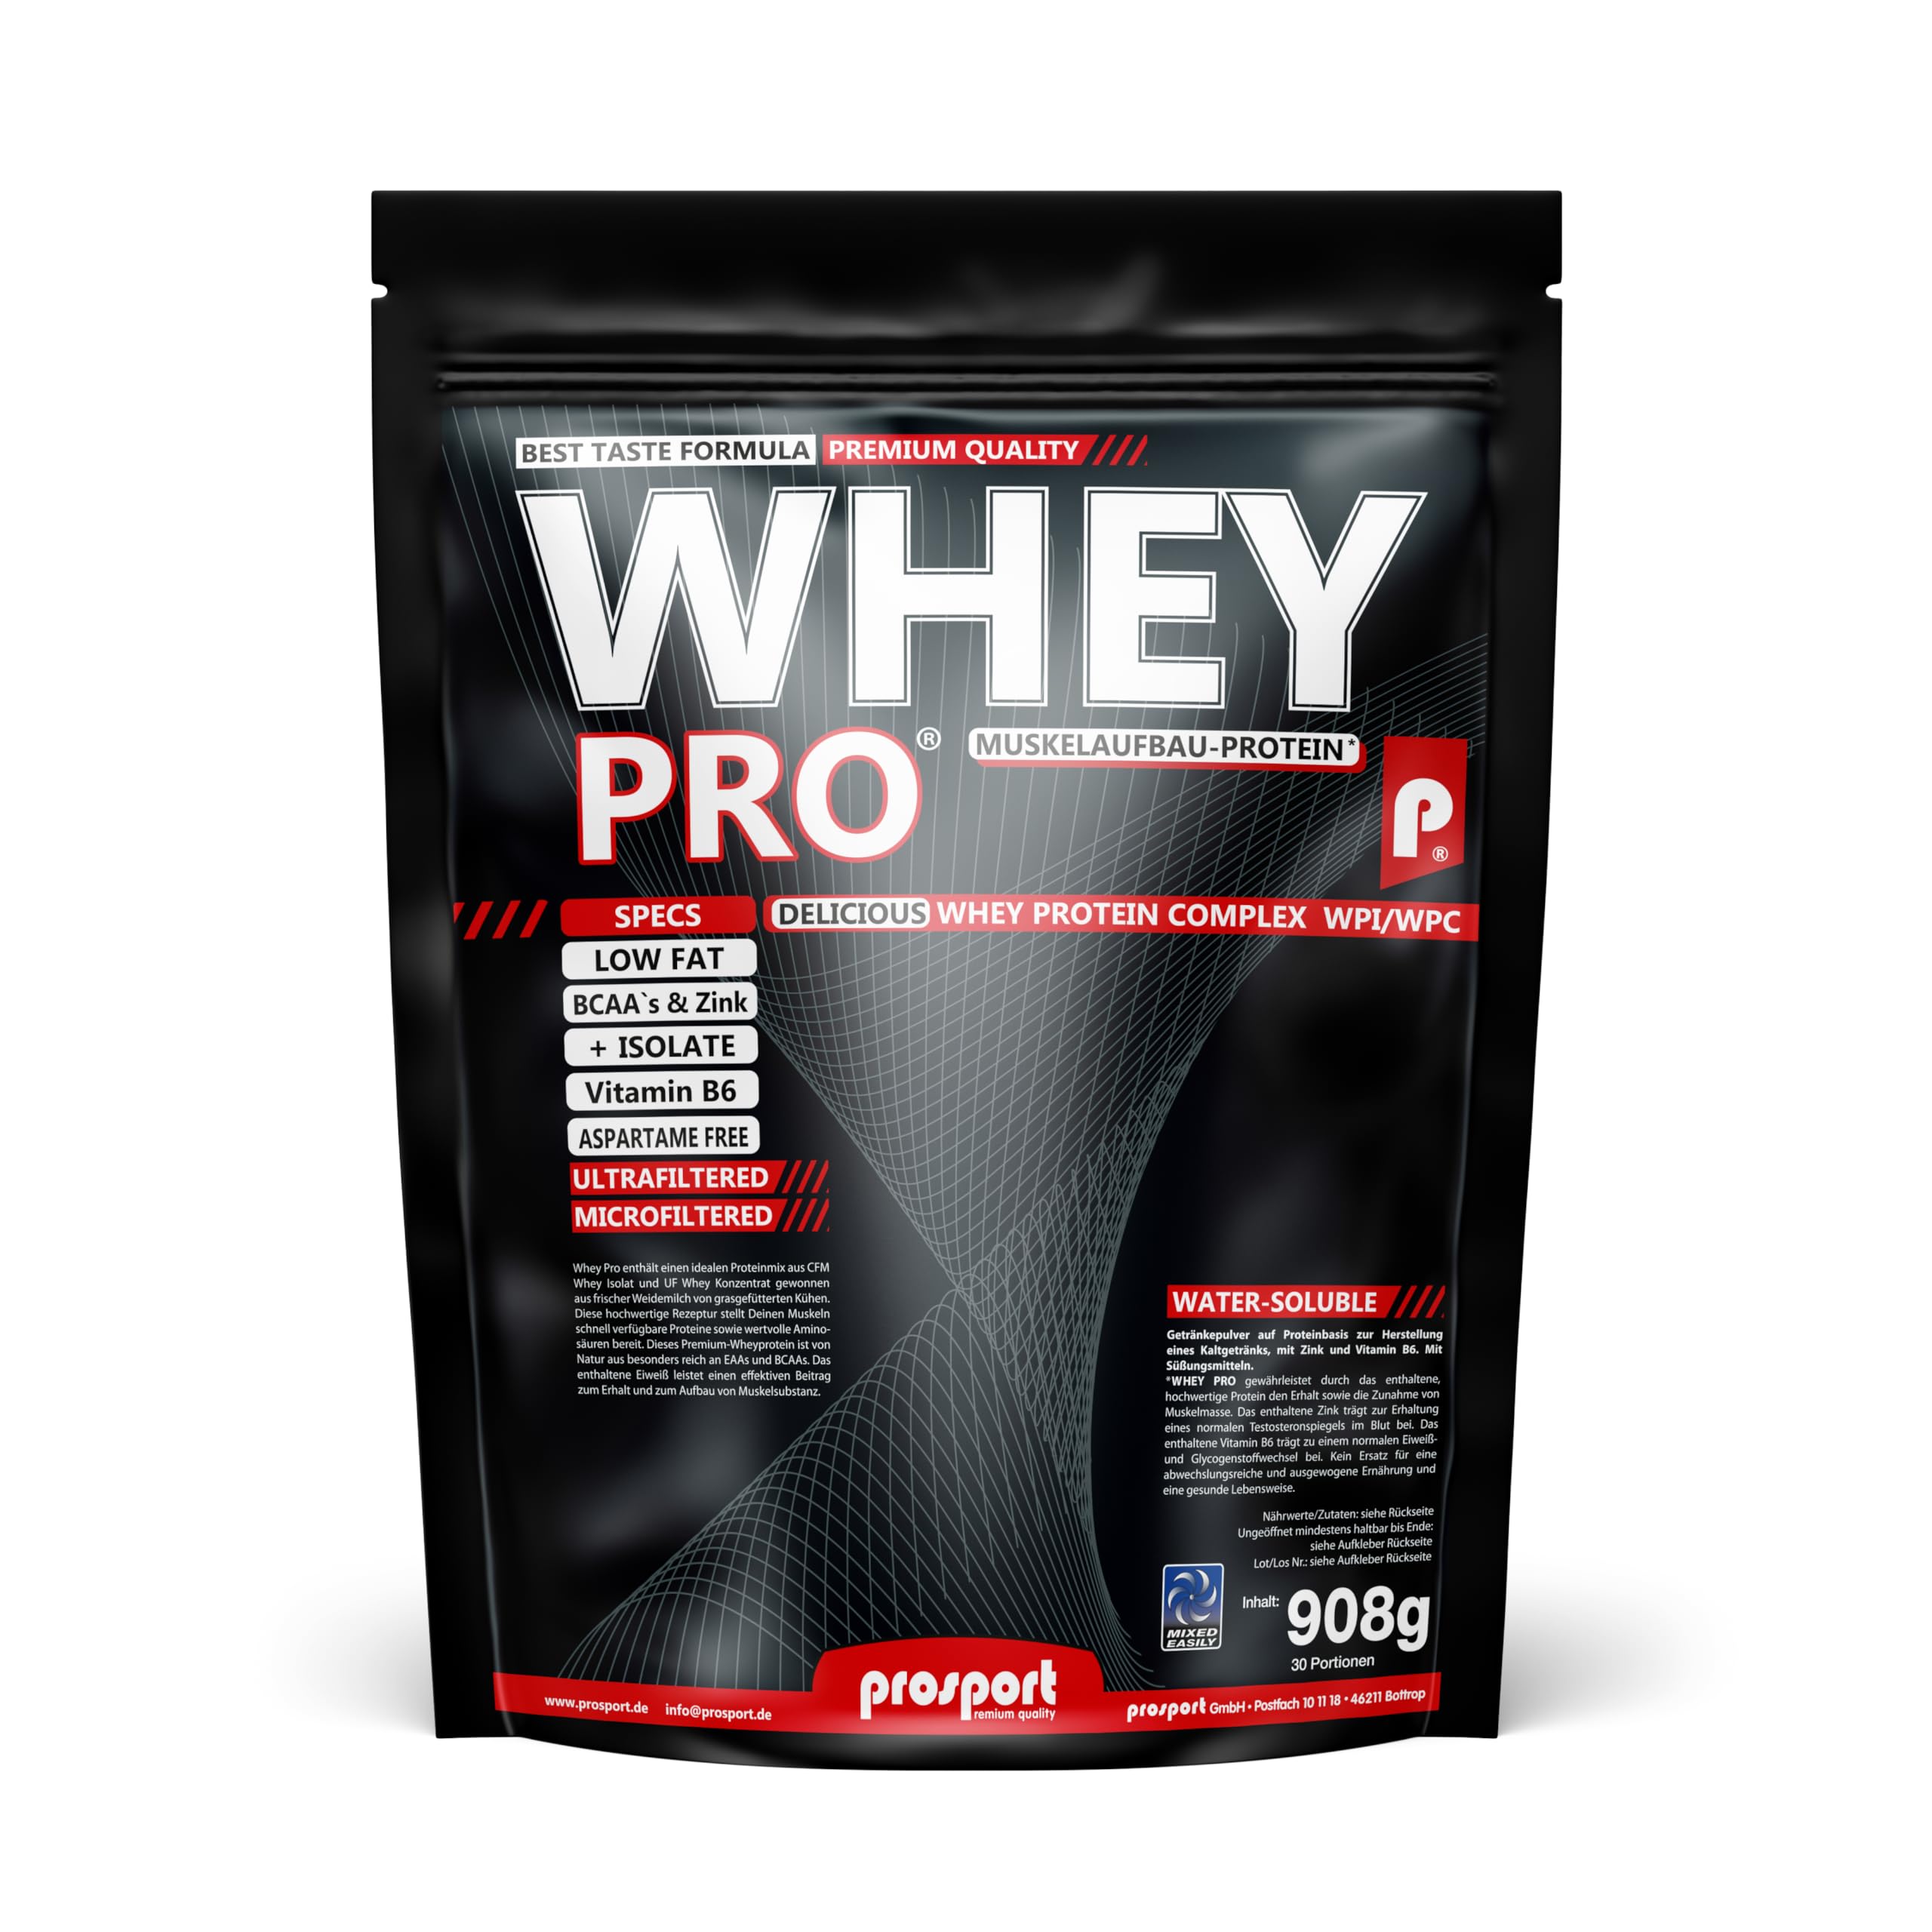 Prosport WHEY PRO Coco White-Choc, 908g Beutel, Whey Protein, Eiweisspulver, Zink, Vitamin B6, essentielle Aminosäuren (EAAs)